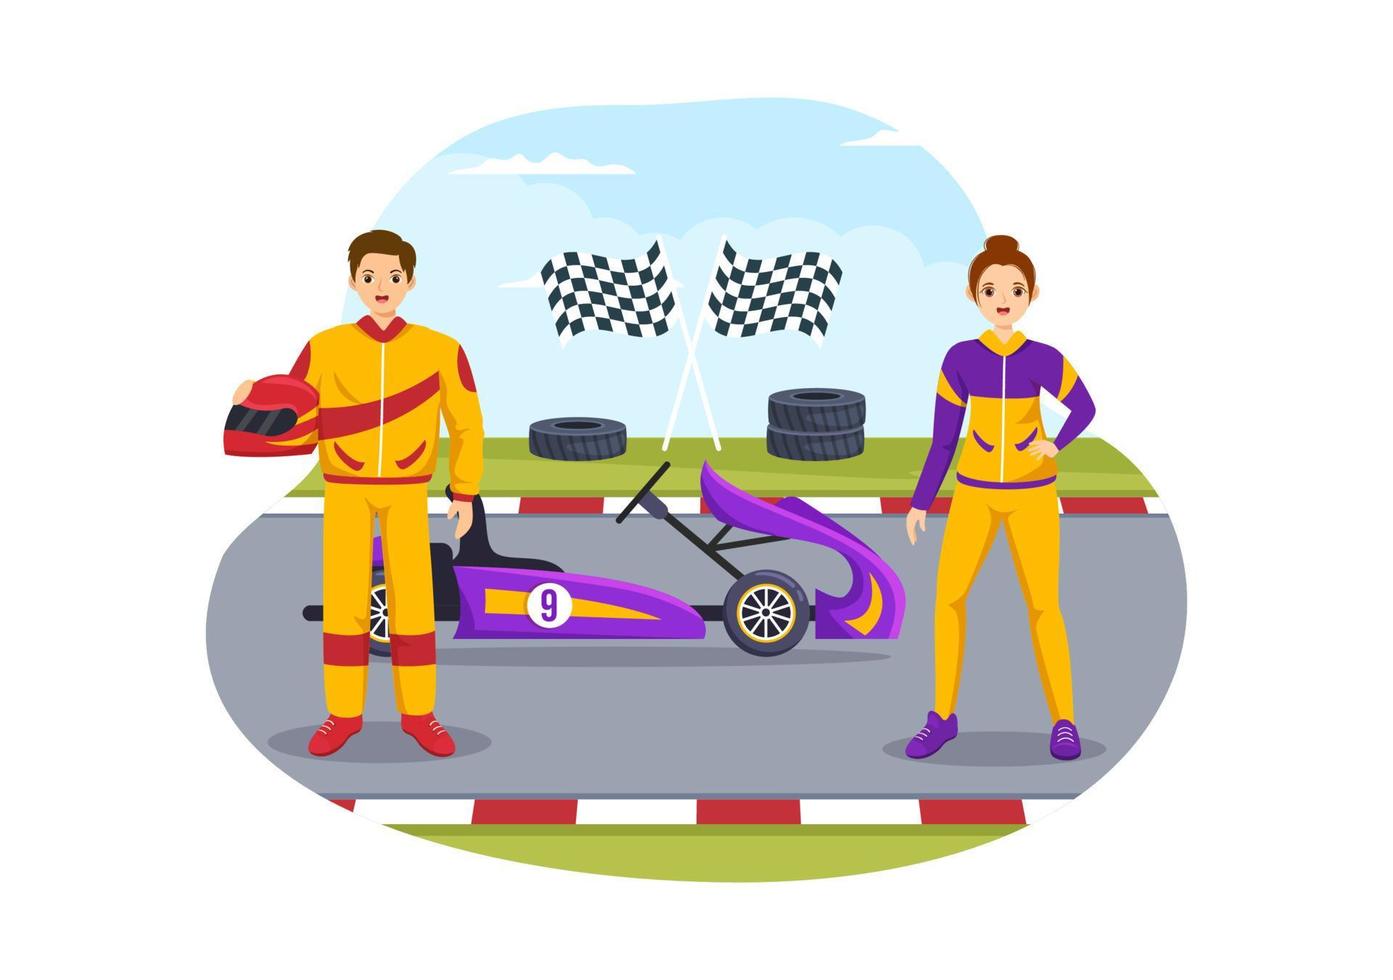 deporte de karting con juego de carreras go kart o mini coche en pista de circuito pequeño en ilustración de plantilla dibujada a mano de dibujos animados planos vector